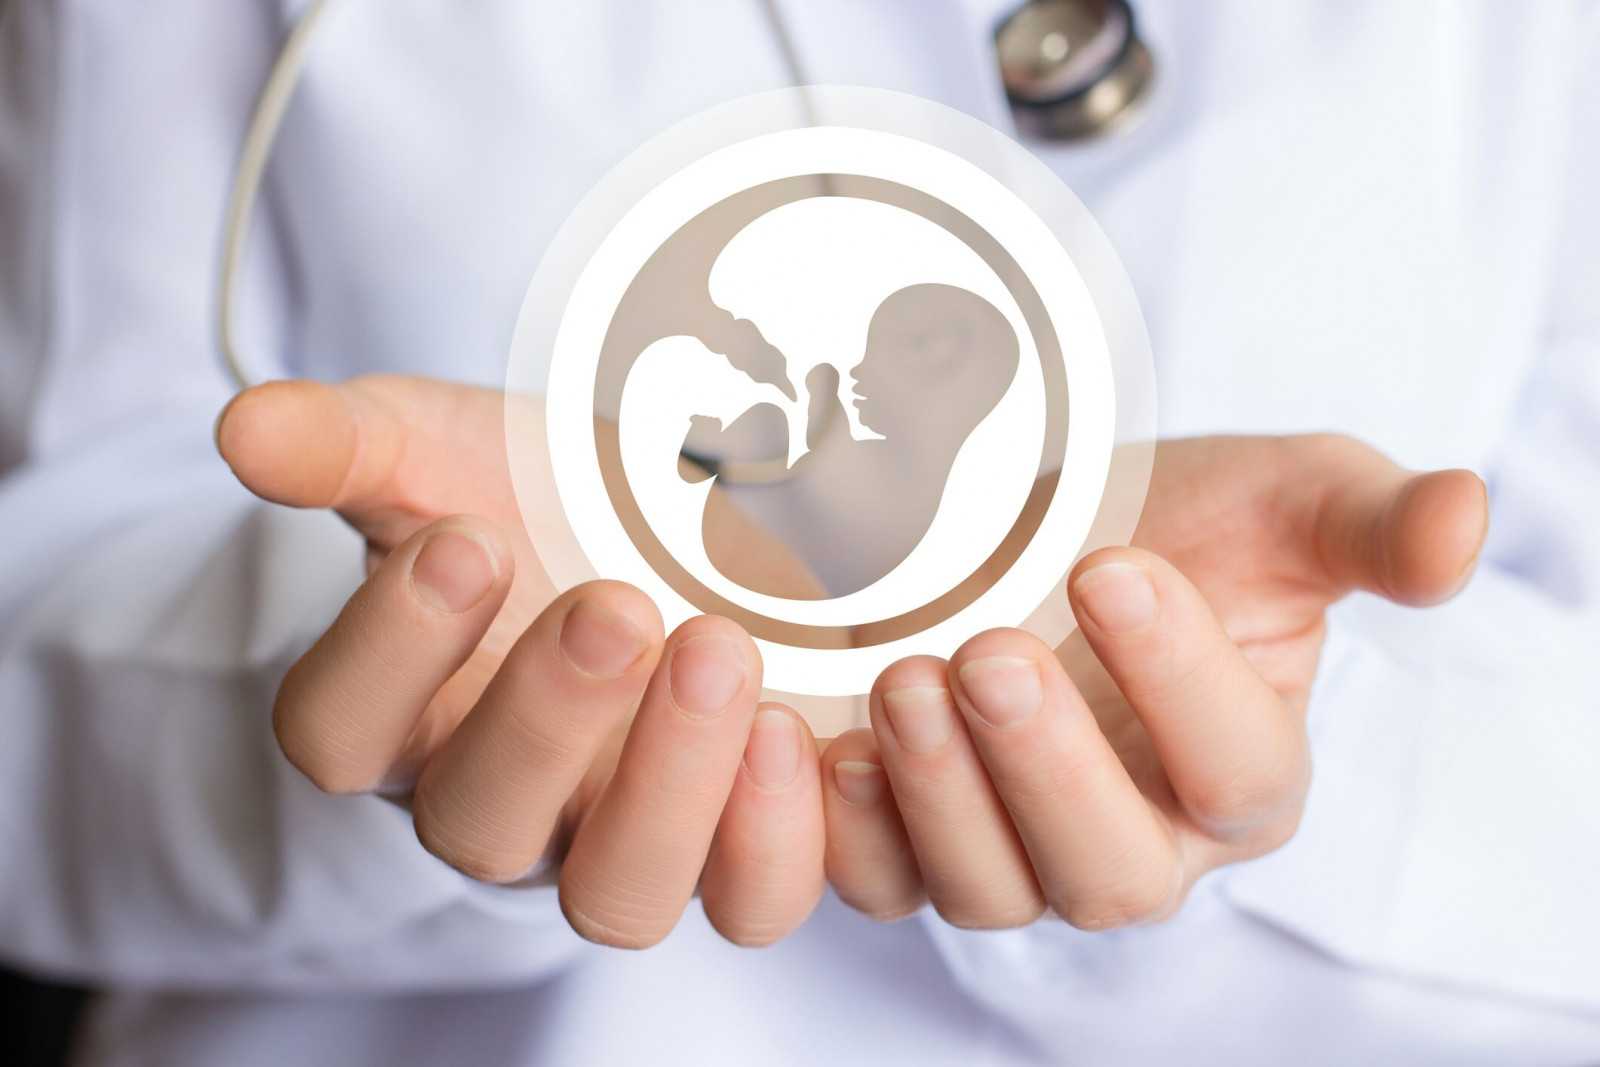 Дети эко: последствия для здоровья, могут ли малыши рожденные после экстракорпорального оплодотворения быть в будущем бесплодны?